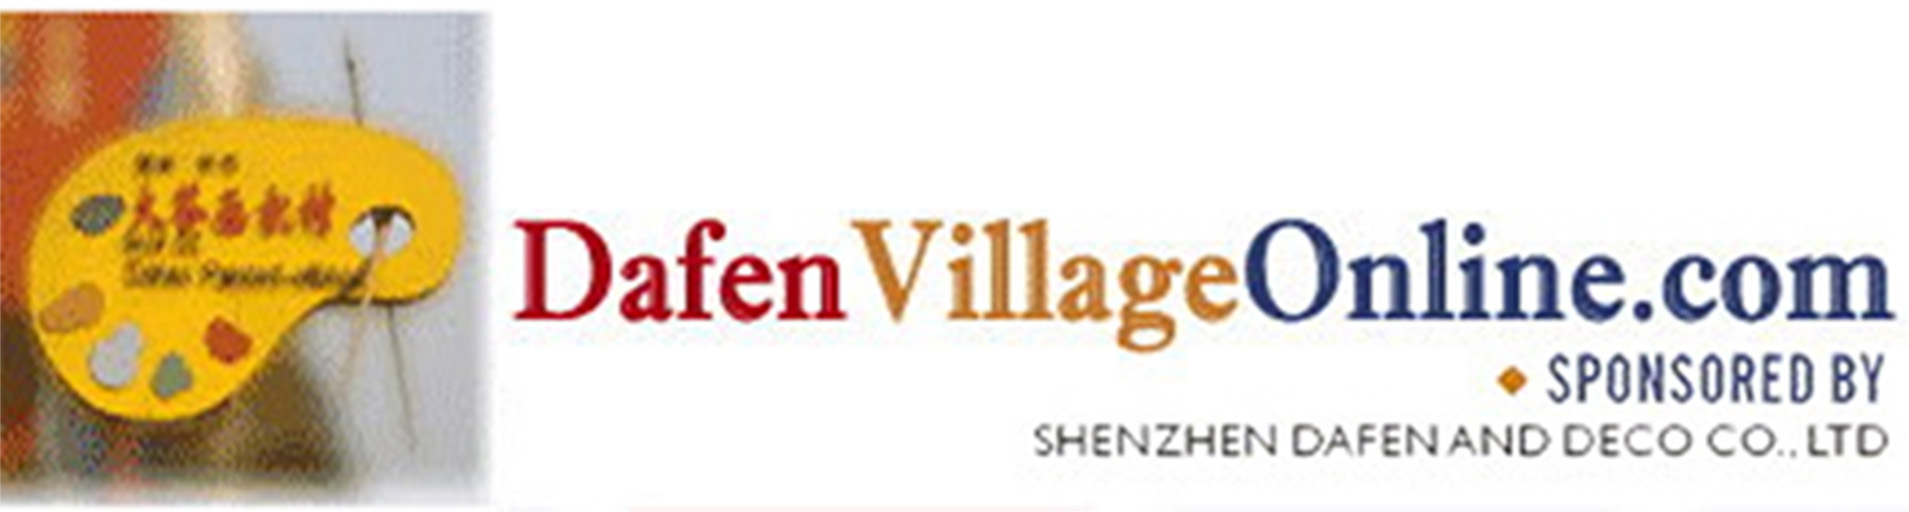 DafenVillageOnline.com — News in Dafen Village